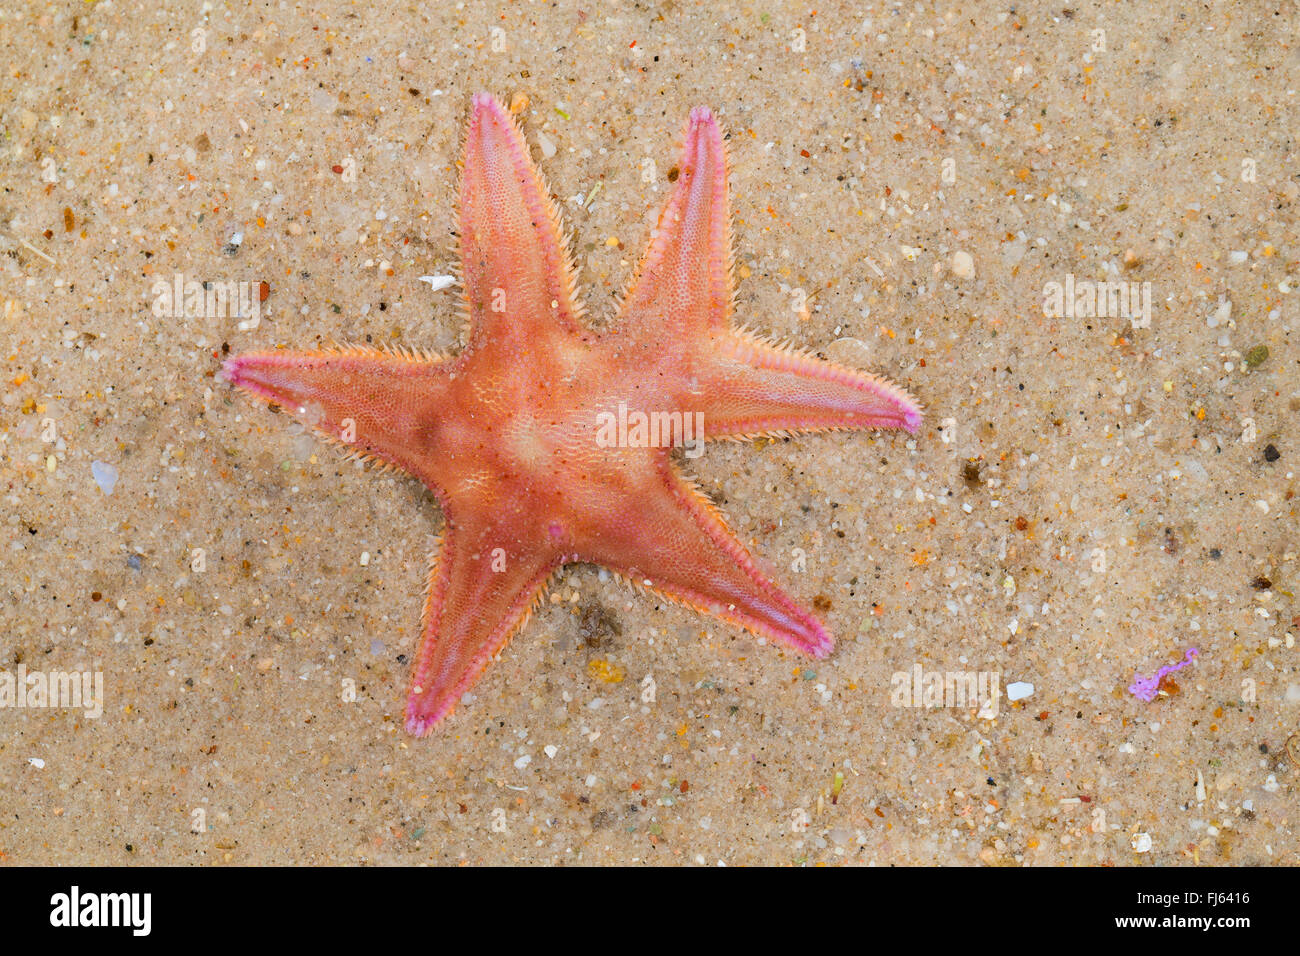 Sand Stern (Astropecten Irregularis, Astropecten Muelleri), mit einem gegabelten Arm, regeneration Stockfoto